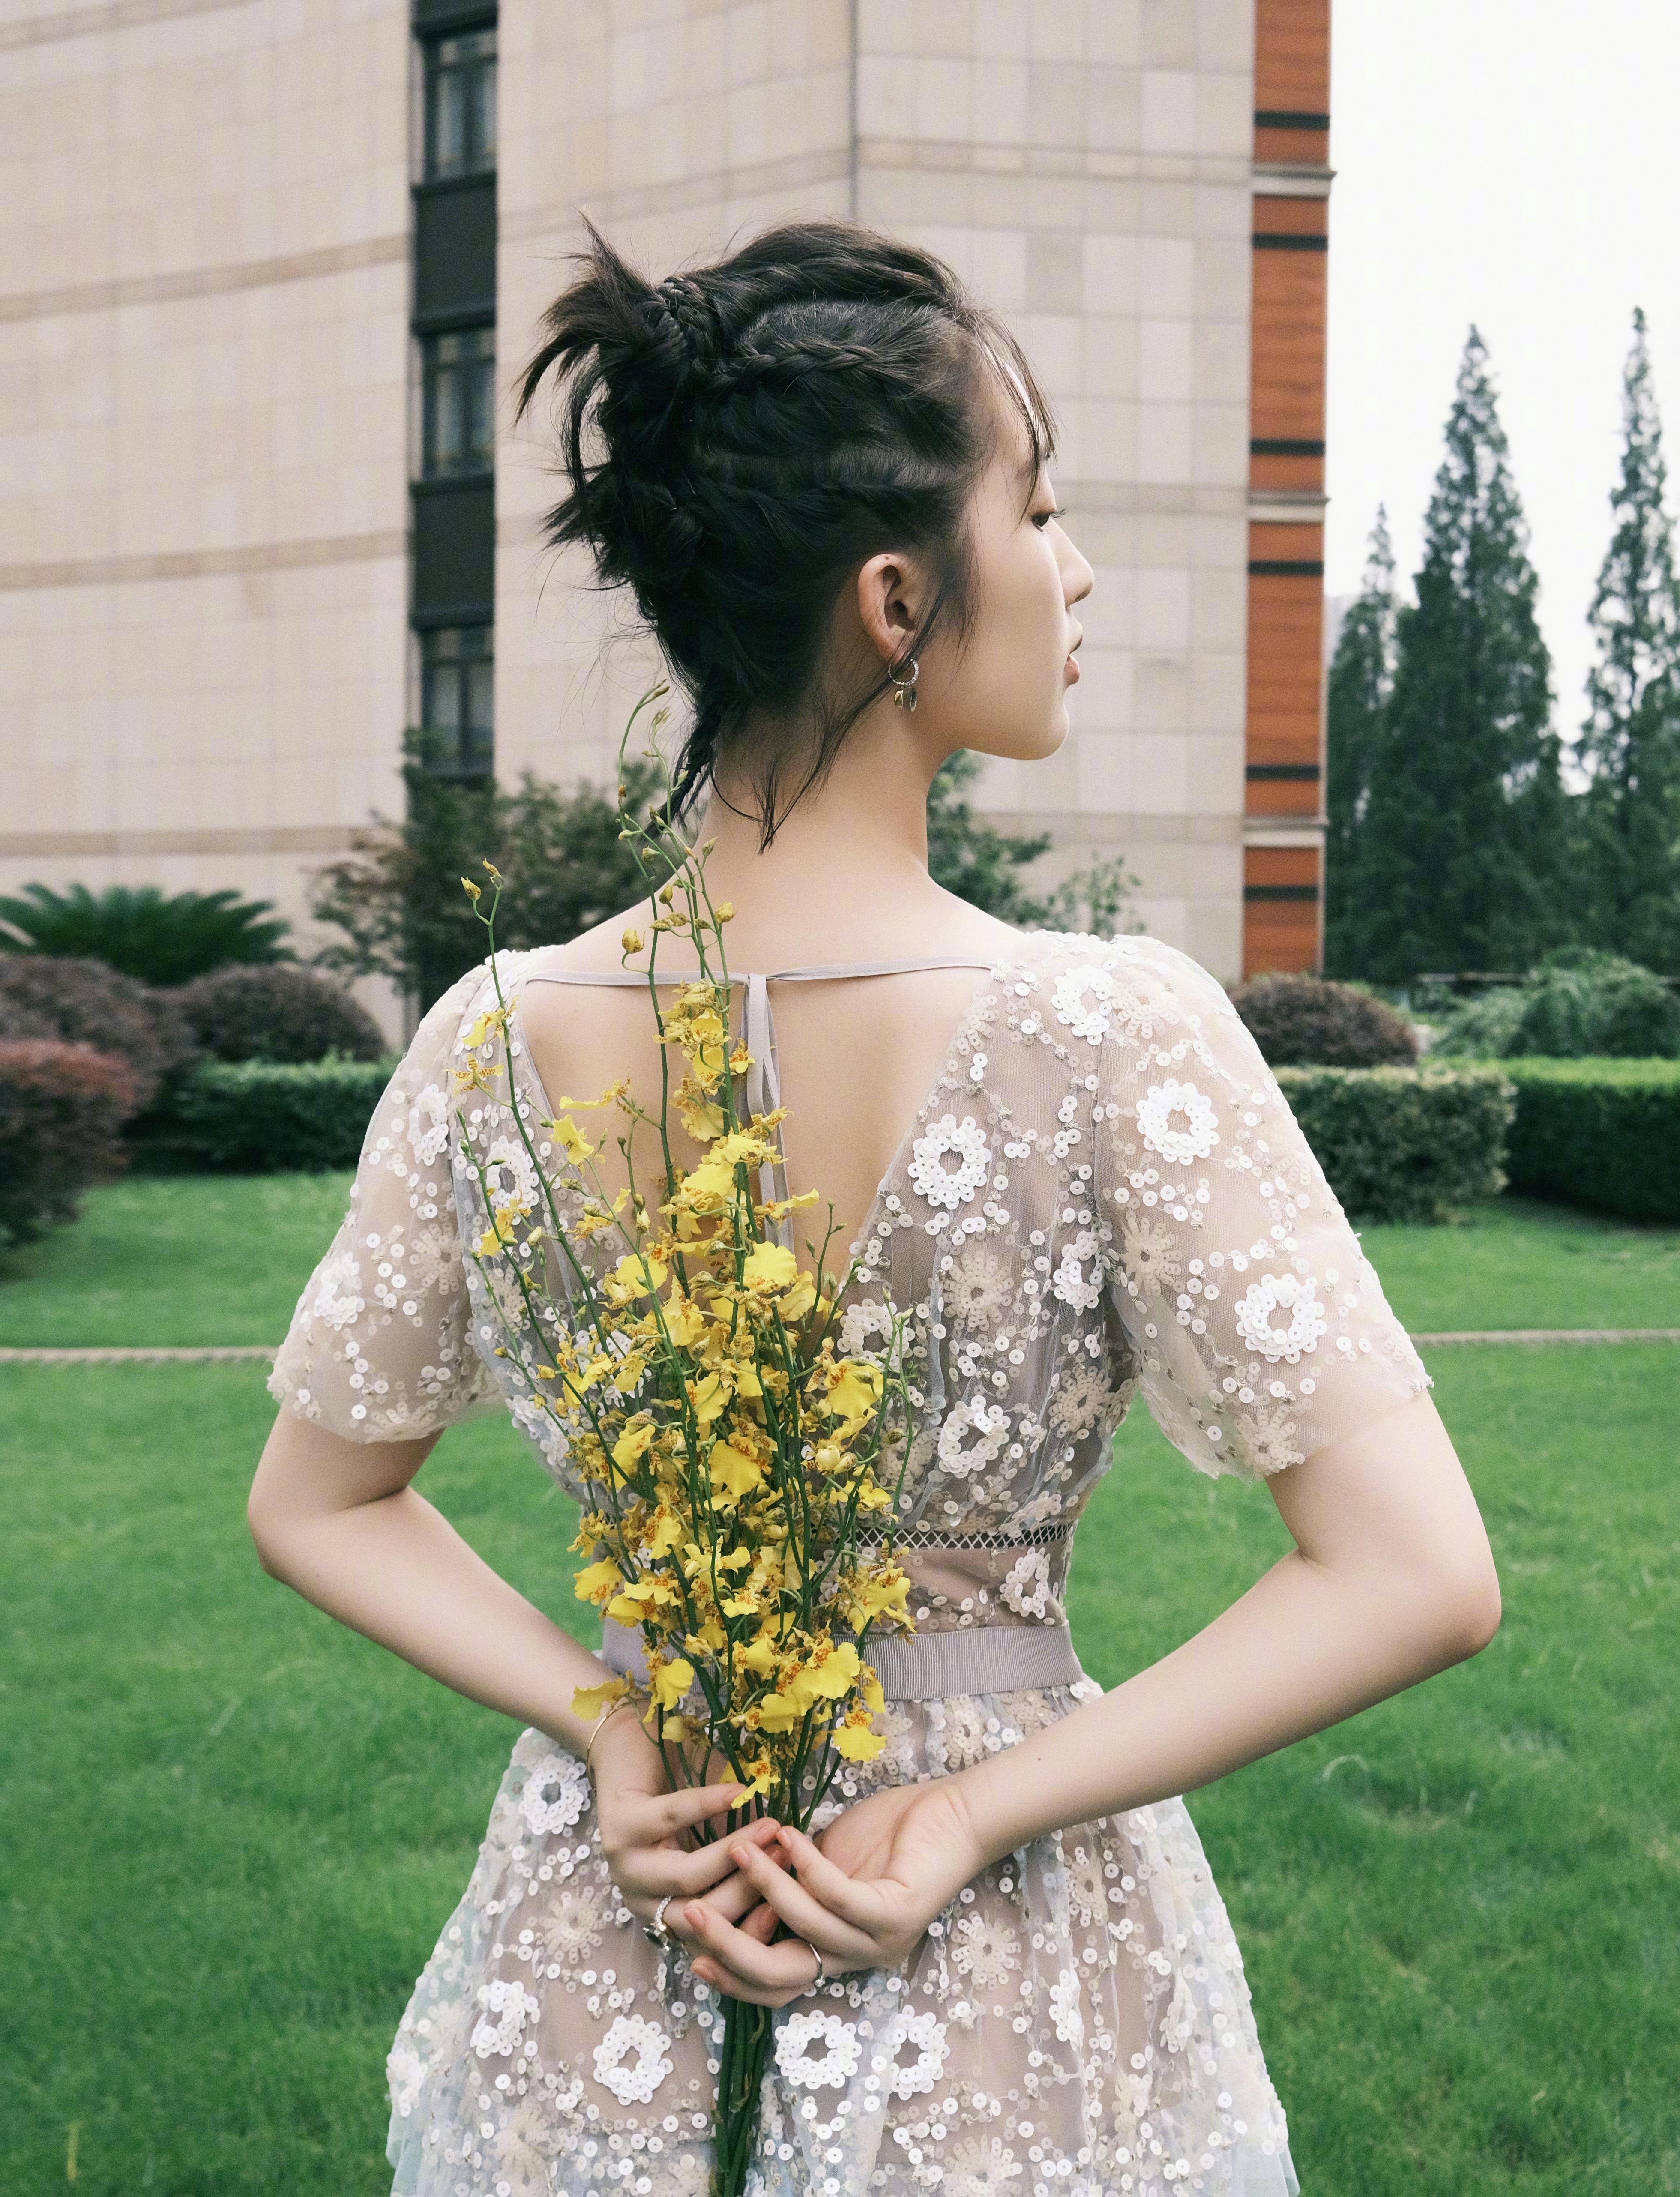 上影节新片《风平浪静》发布会 邓恩熙 穿着花朵亮片裙 尽显优雅灵动的少女气质,